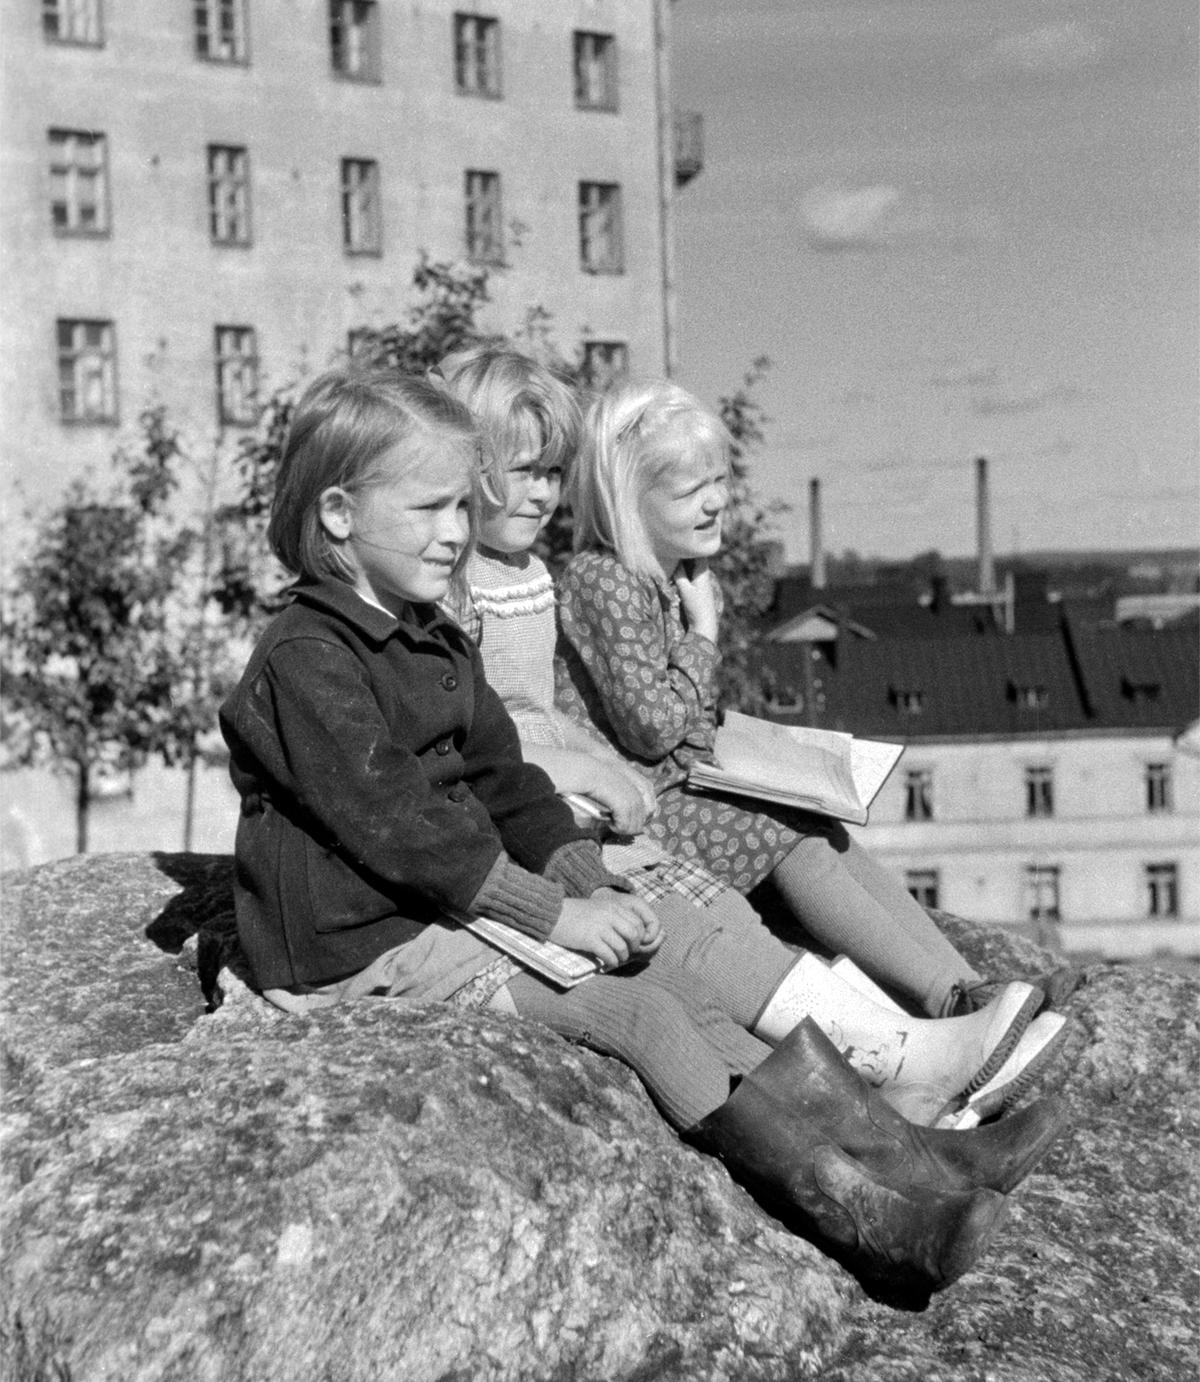 Lapset istuvat Katri Valan puistossa vuonna 1950 lähellä nykyistä Sörnäisten metroasemaa. Paikka oli silloin lähempänä merta kuin nyt. Kuva Eino Heinonen, Helsingin kaupunginmuseo.